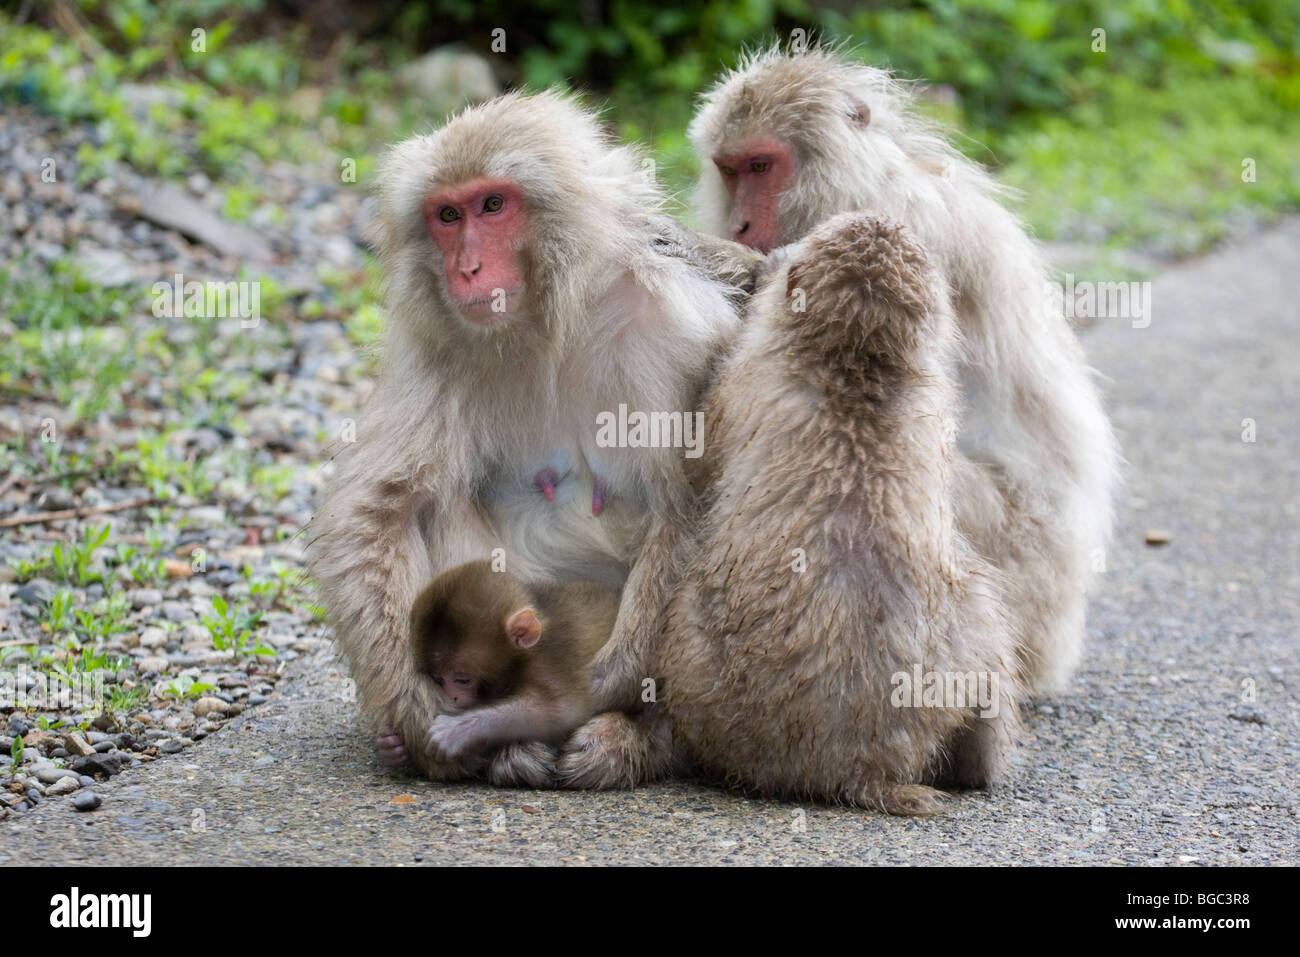 Famiglia di macachi giapponesi selvatici, macachi giovani che governano una madre con il bambino su un sentiero nel Parco delle scimmie Jigokudani, Honshu Island, Giappone. (Macaca) Foto Stock